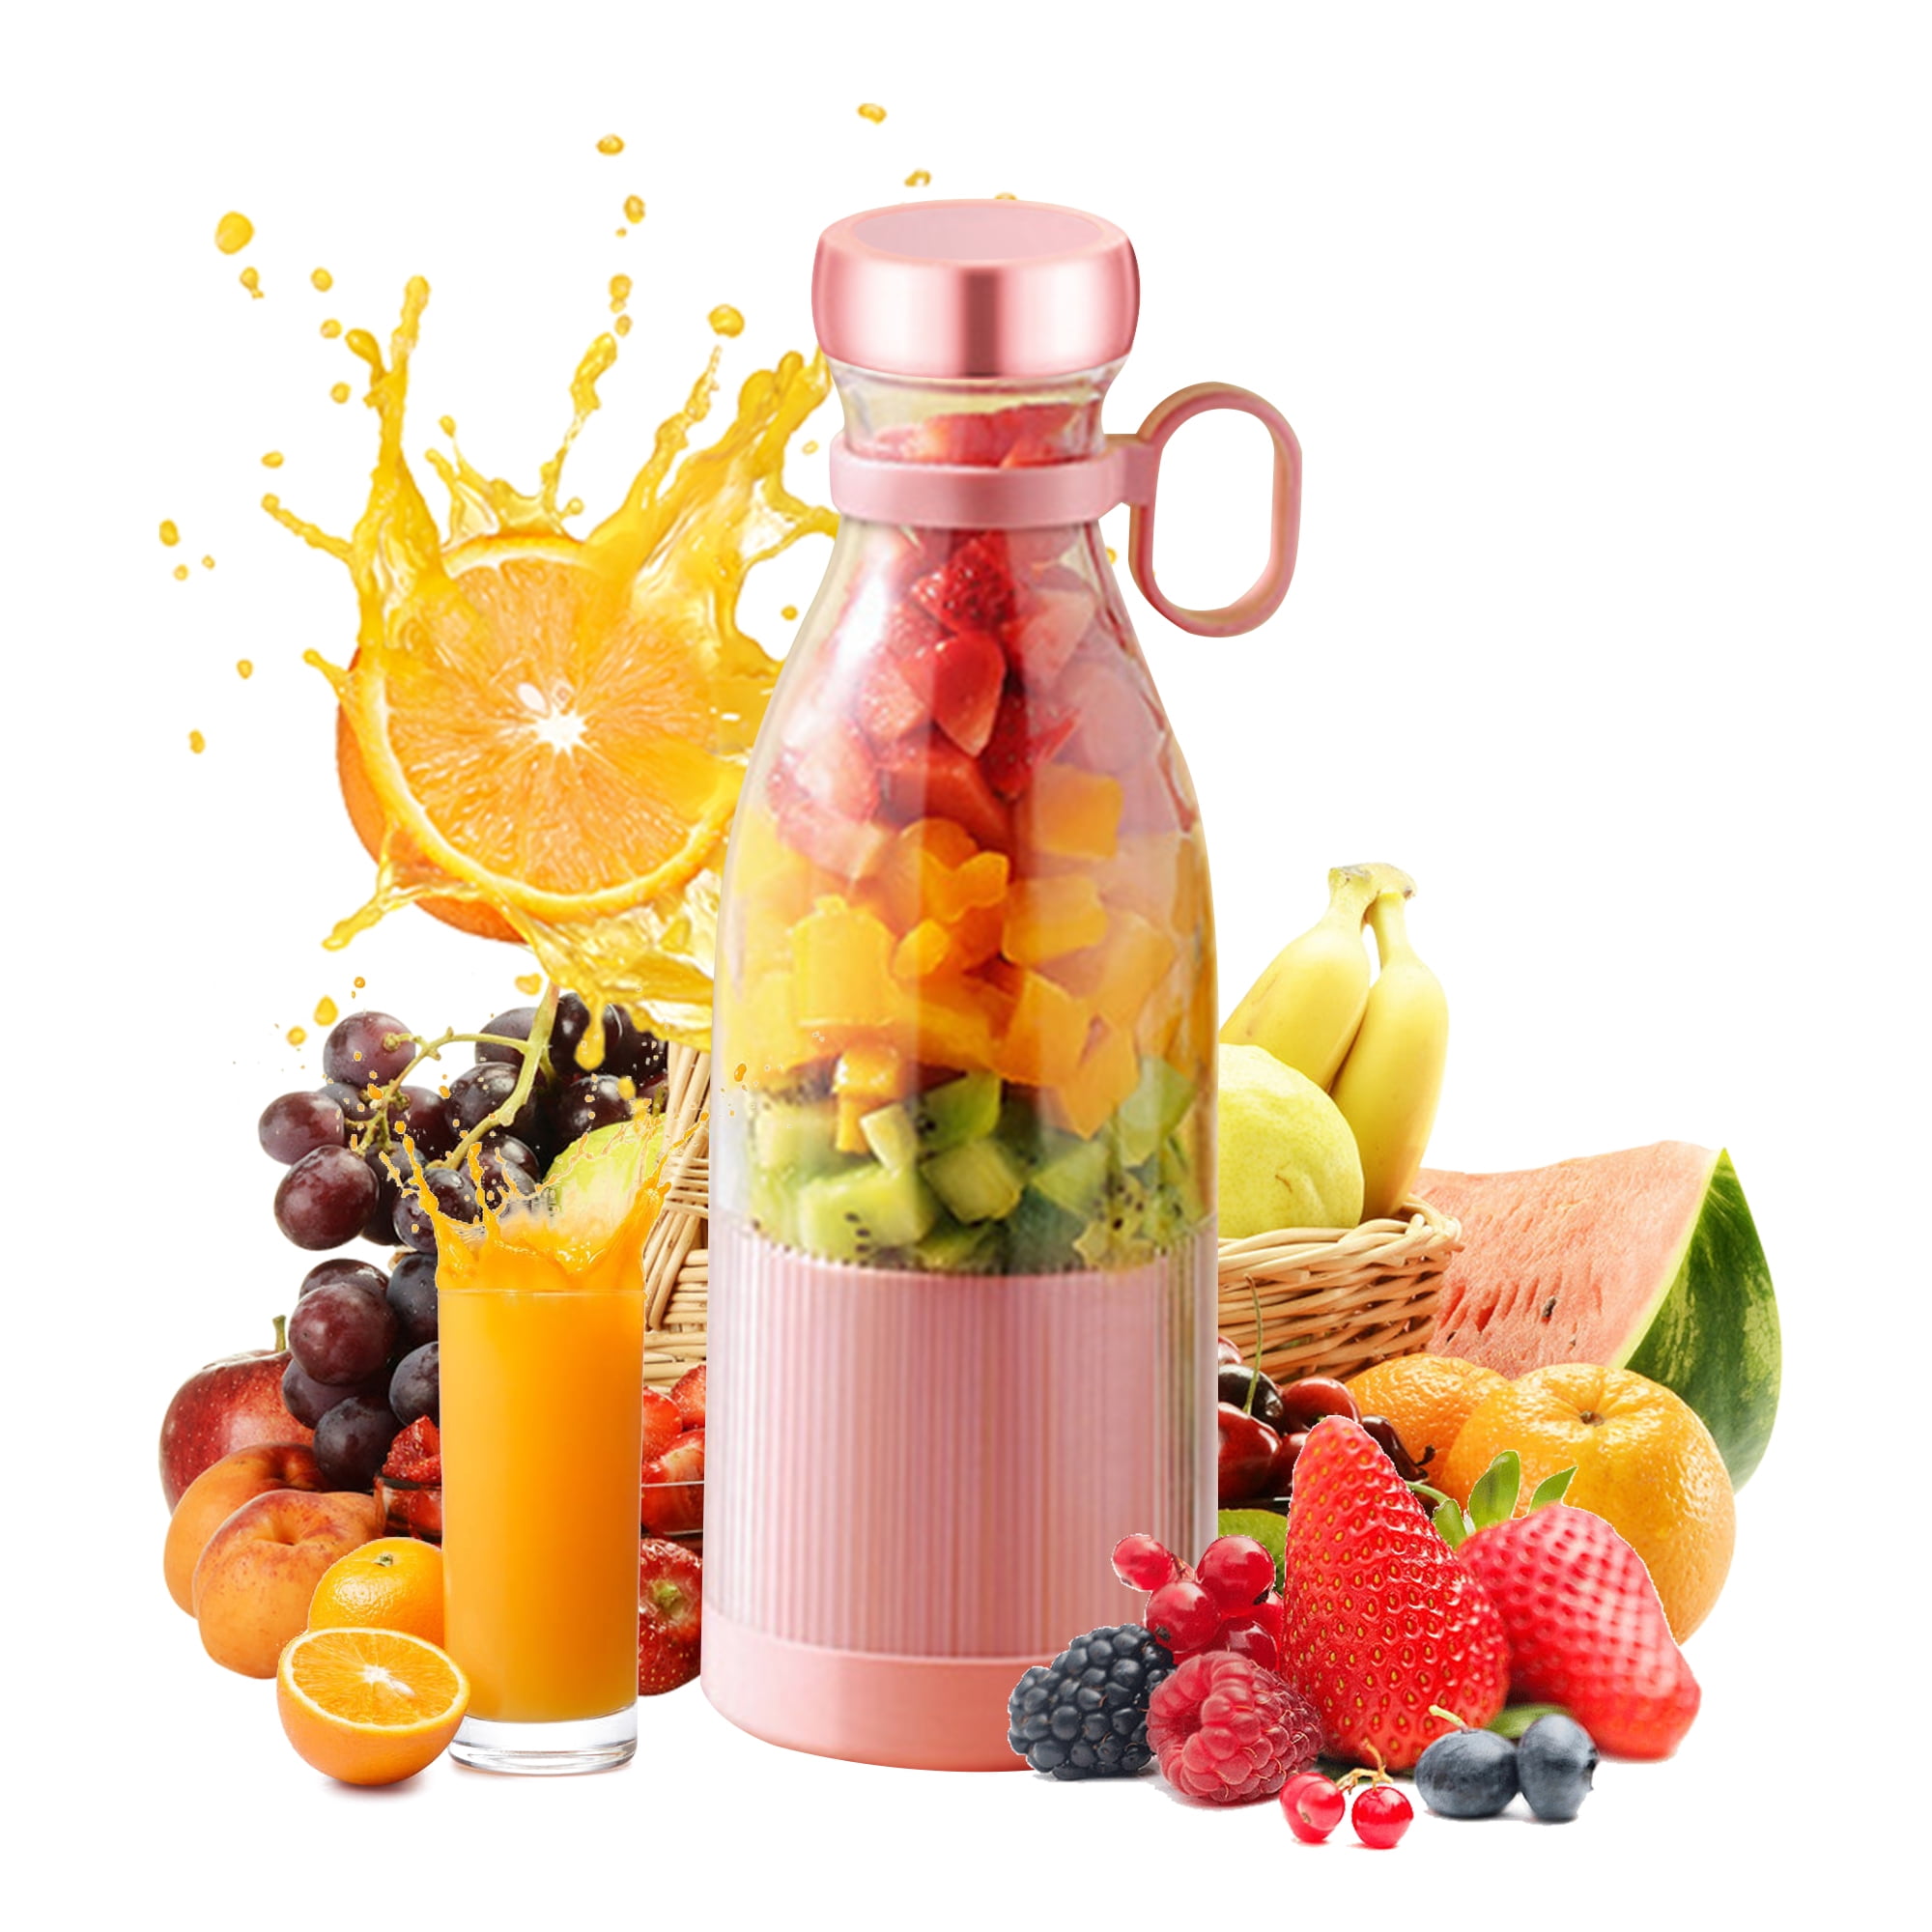 Mini Portable Blender Bottle – Fresh Juice